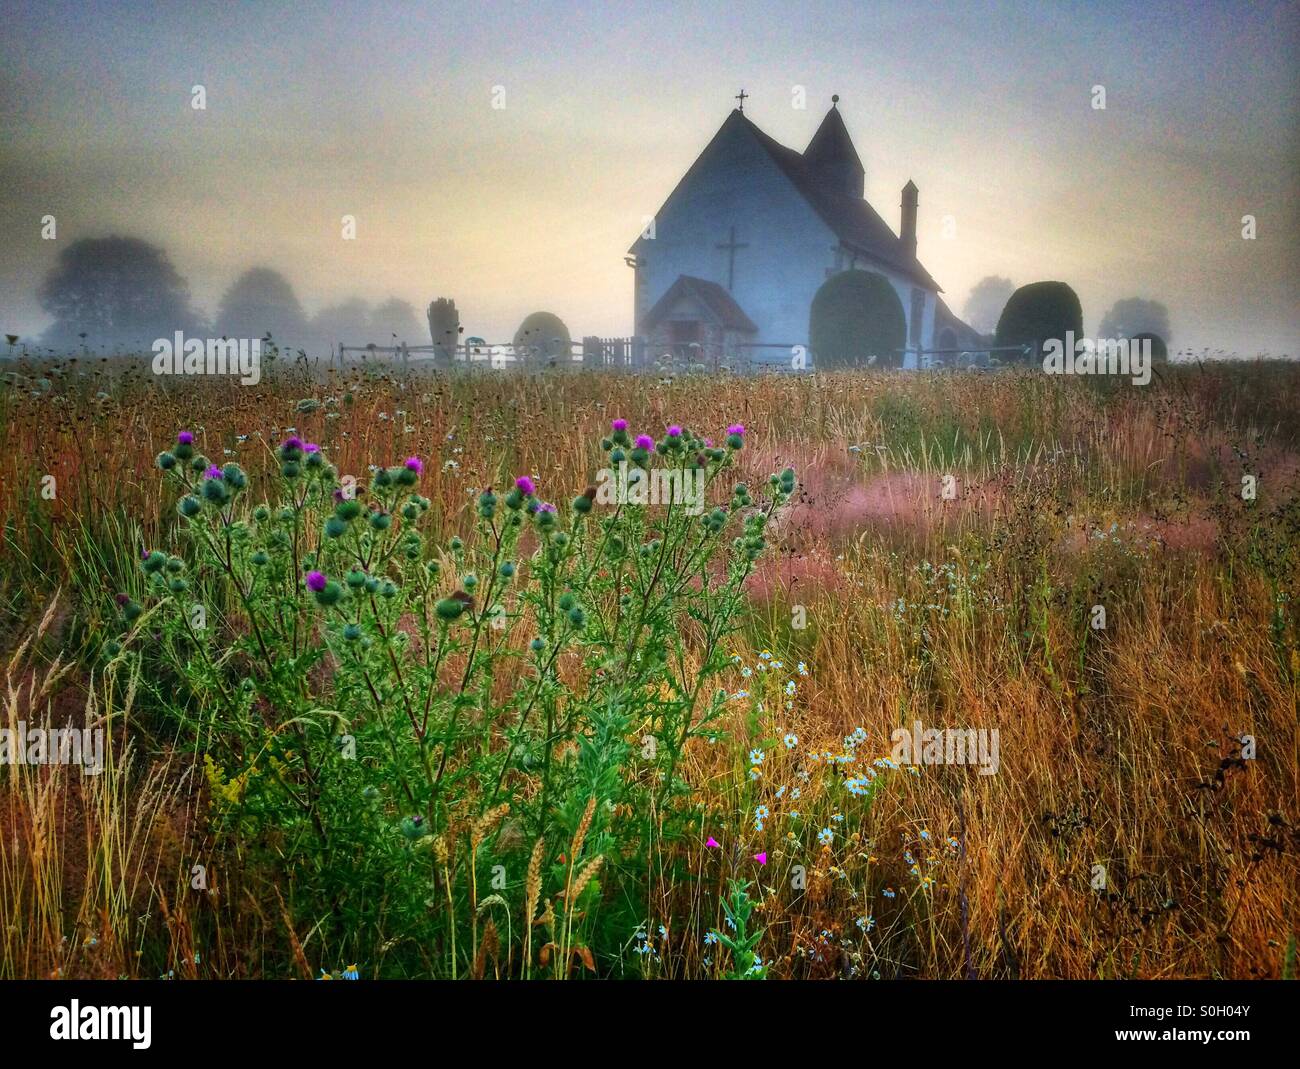 St.-Hubertus Kirche ist eine kleine Kirche auf einem Hügel in Idsworth, Hampshire an Wildblumen, an einem nebligen Morgen umgeben Stockfoto